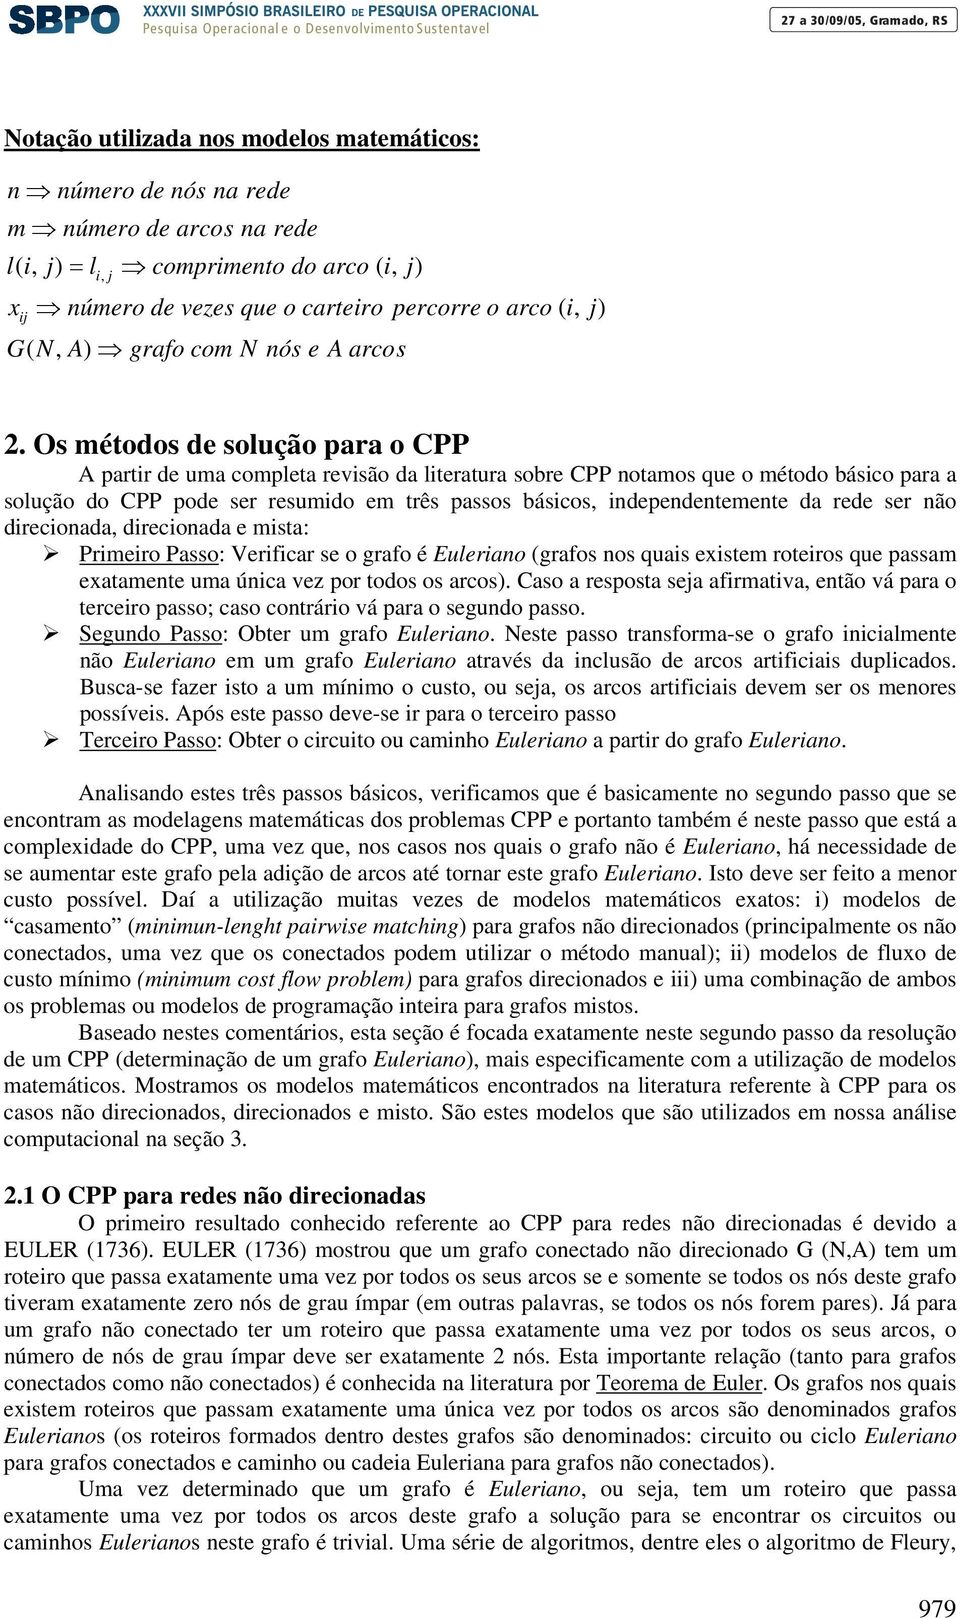 Os métodos de solução para o CPP A partir de uma completa revisão da literatura sobre CPP notamos que o método básico para a solução do CPP pode ser resumido em três passos básicos, independentemente